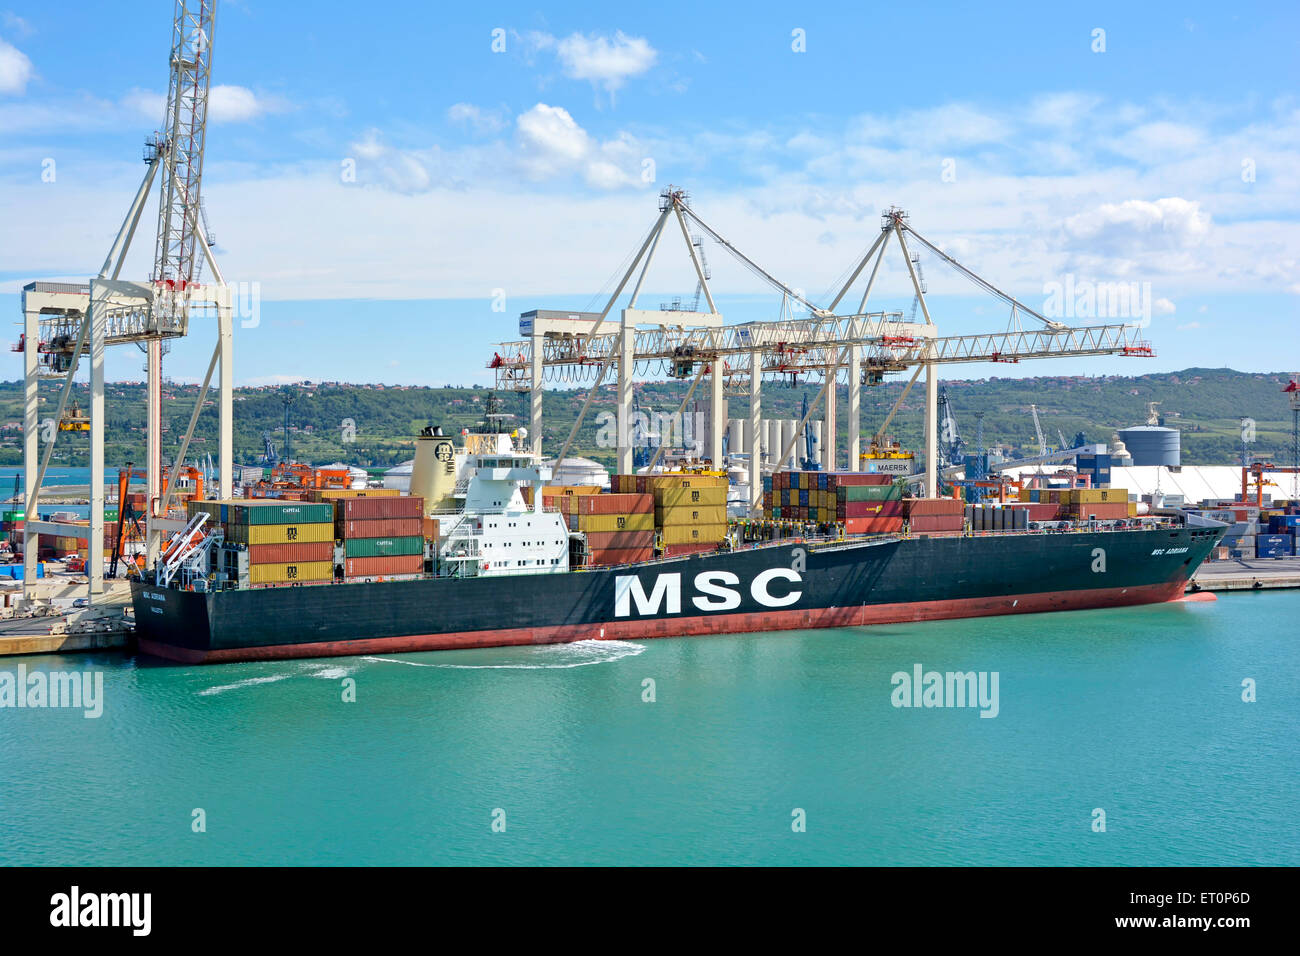 Nahaufnahme des Containerschiffes MSC Adriana, das im Hafen von Koper, Slowenien, an der Adria der istrischen Halbinsel, angedockt ist Stockfoto